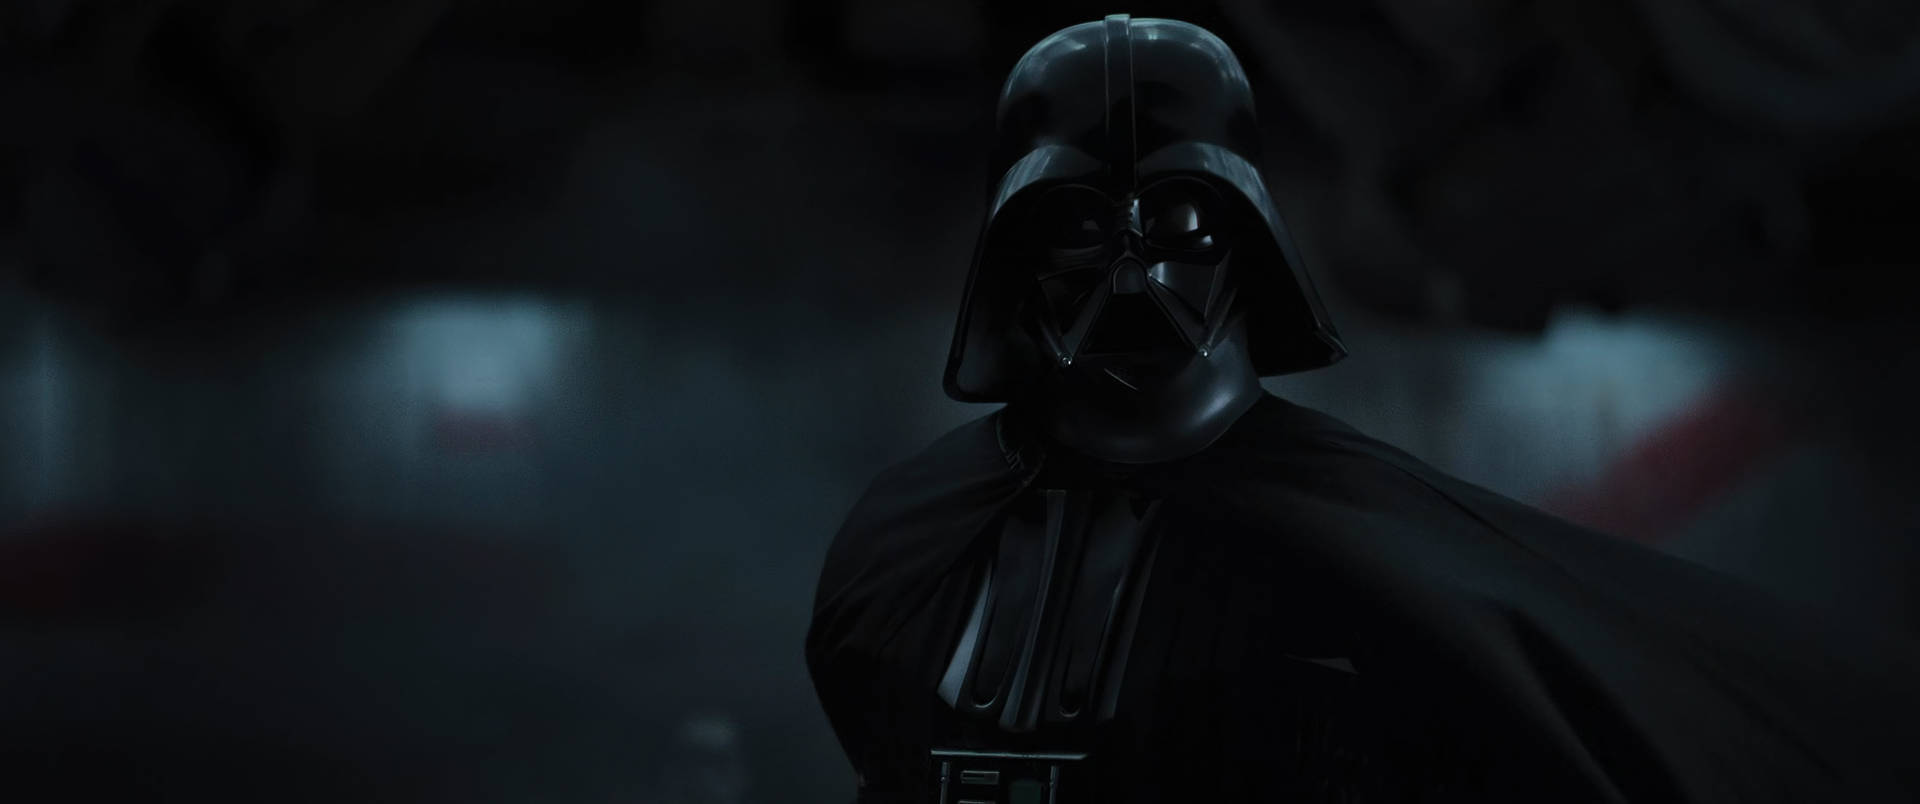 Dark Darth Vader 3840 X 2160 Star Wars Background